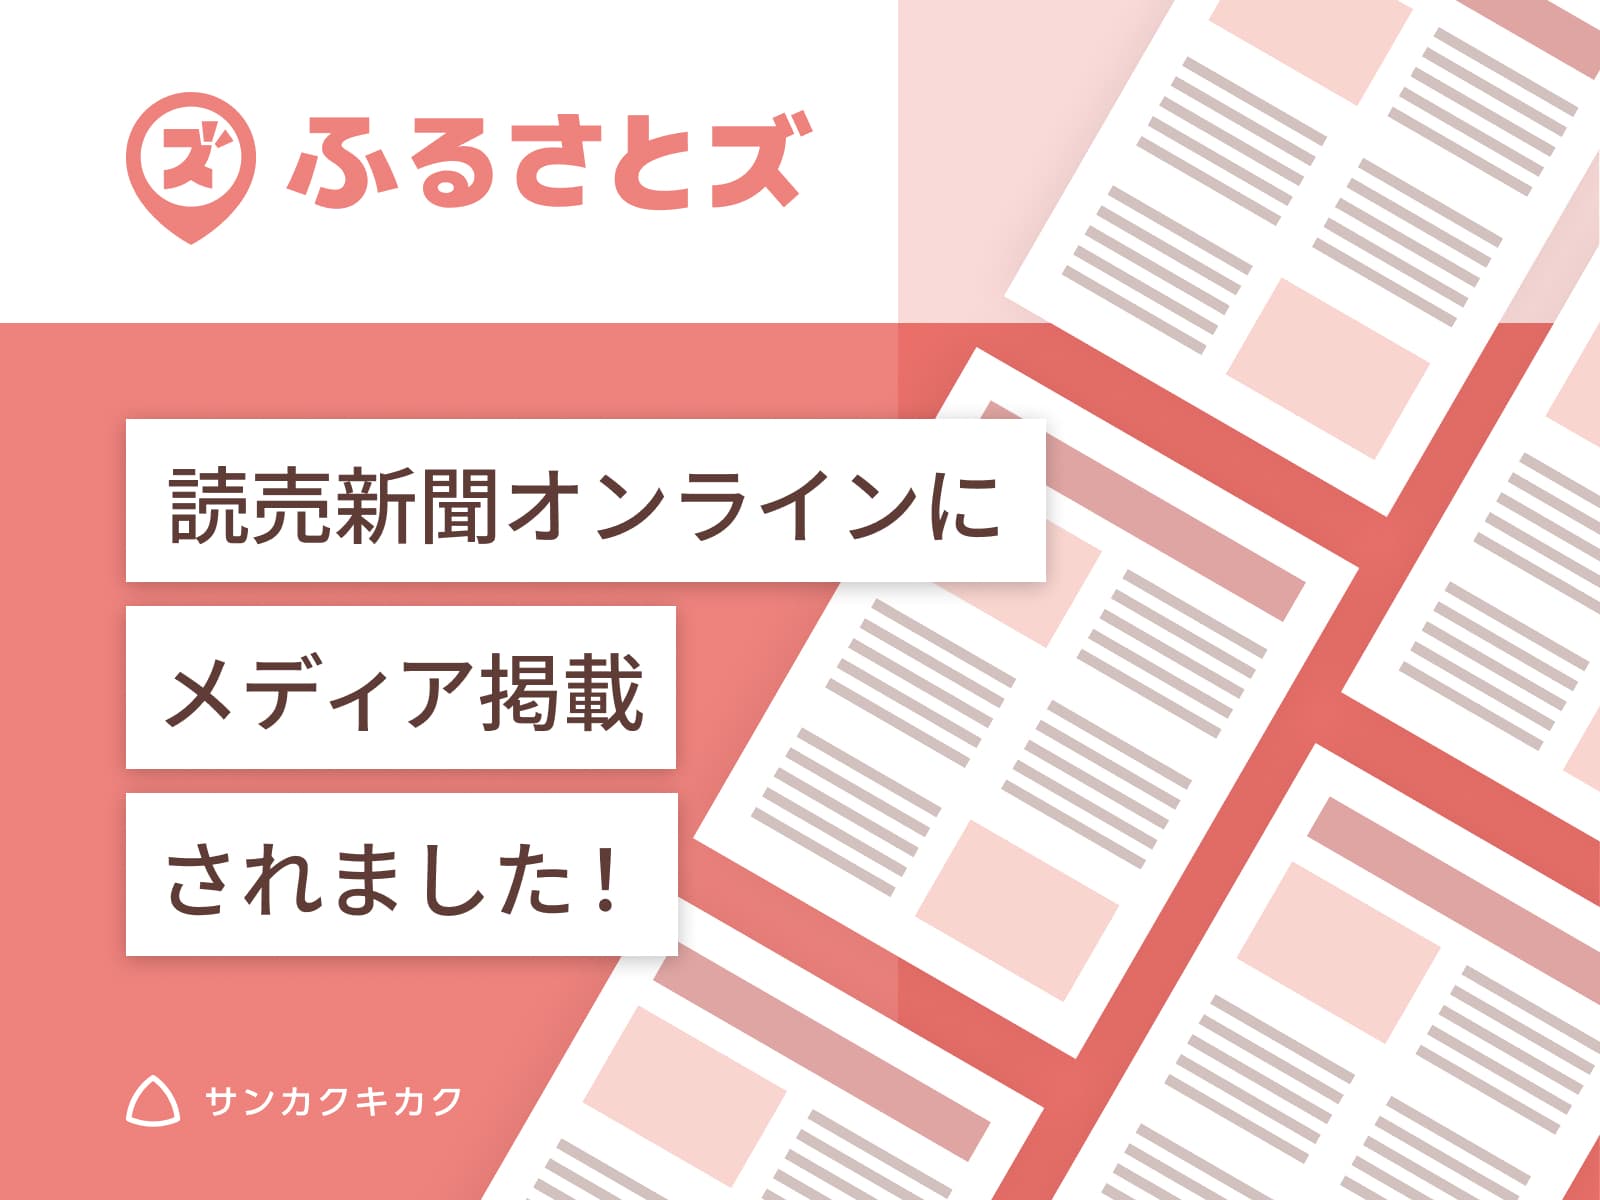 ふるさとズ｜茨城県八千代町での導入開始のプレスリリースが読売新聞オンラインで掲載されました。